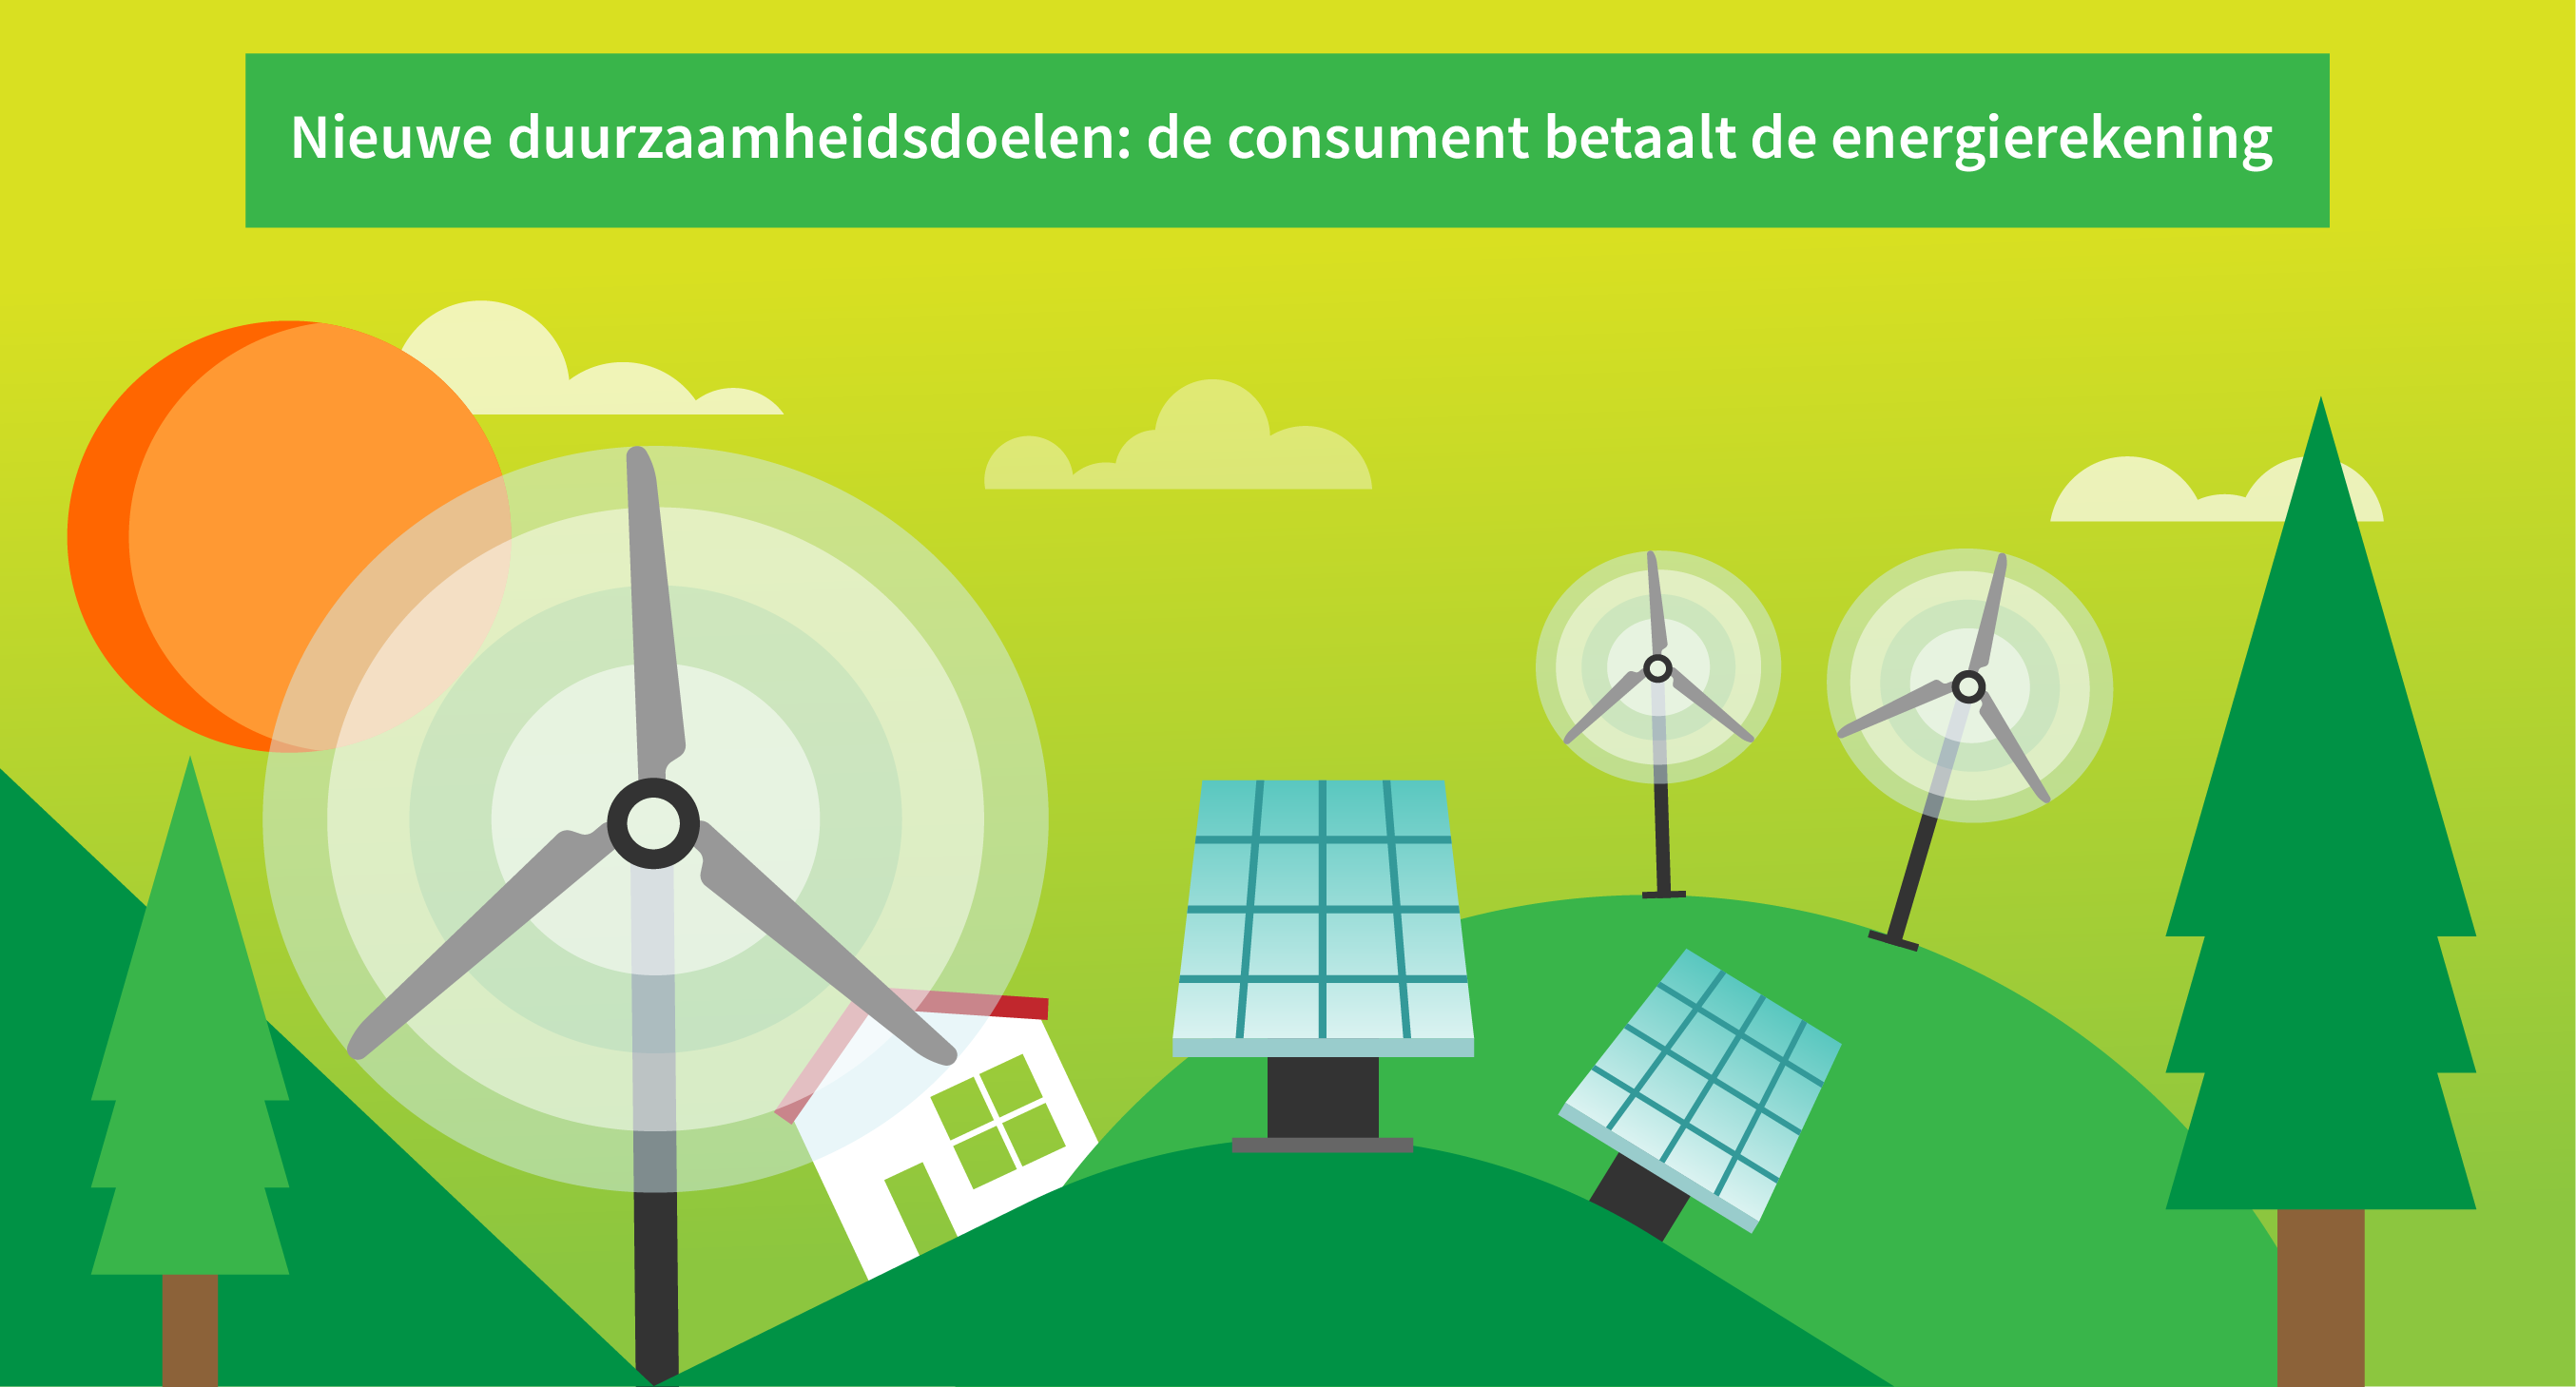 De energierekening en de duurzame ambities van Rutte III